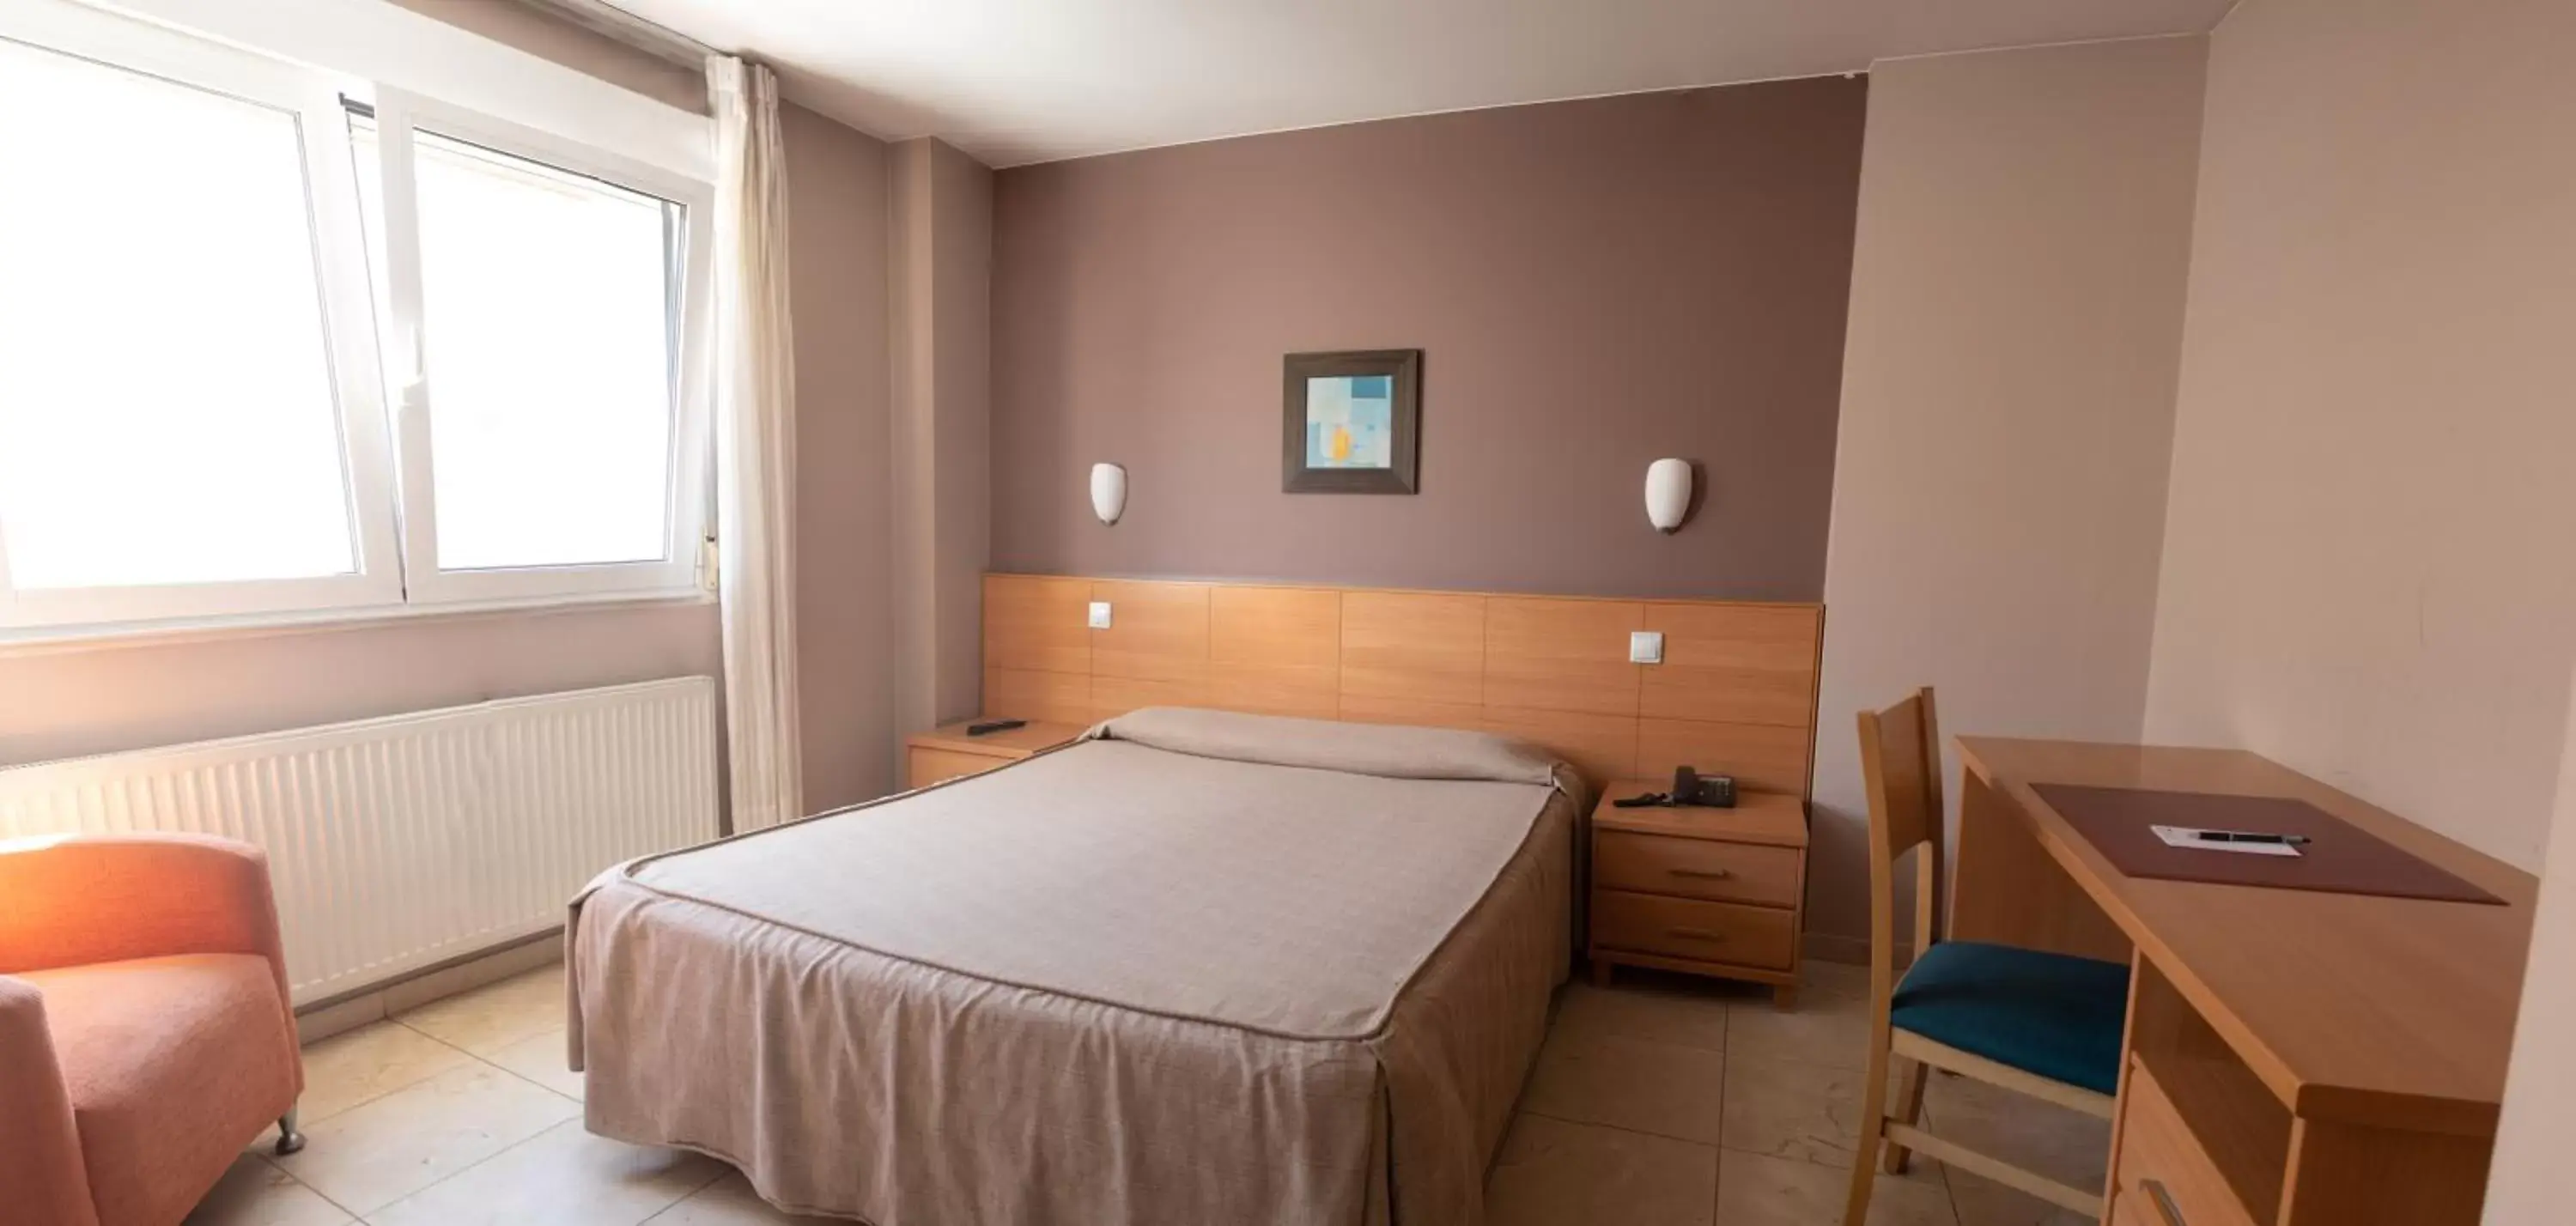 Bedroom, Room Photo in Hotel Apartamentos Ciudad de Lugo